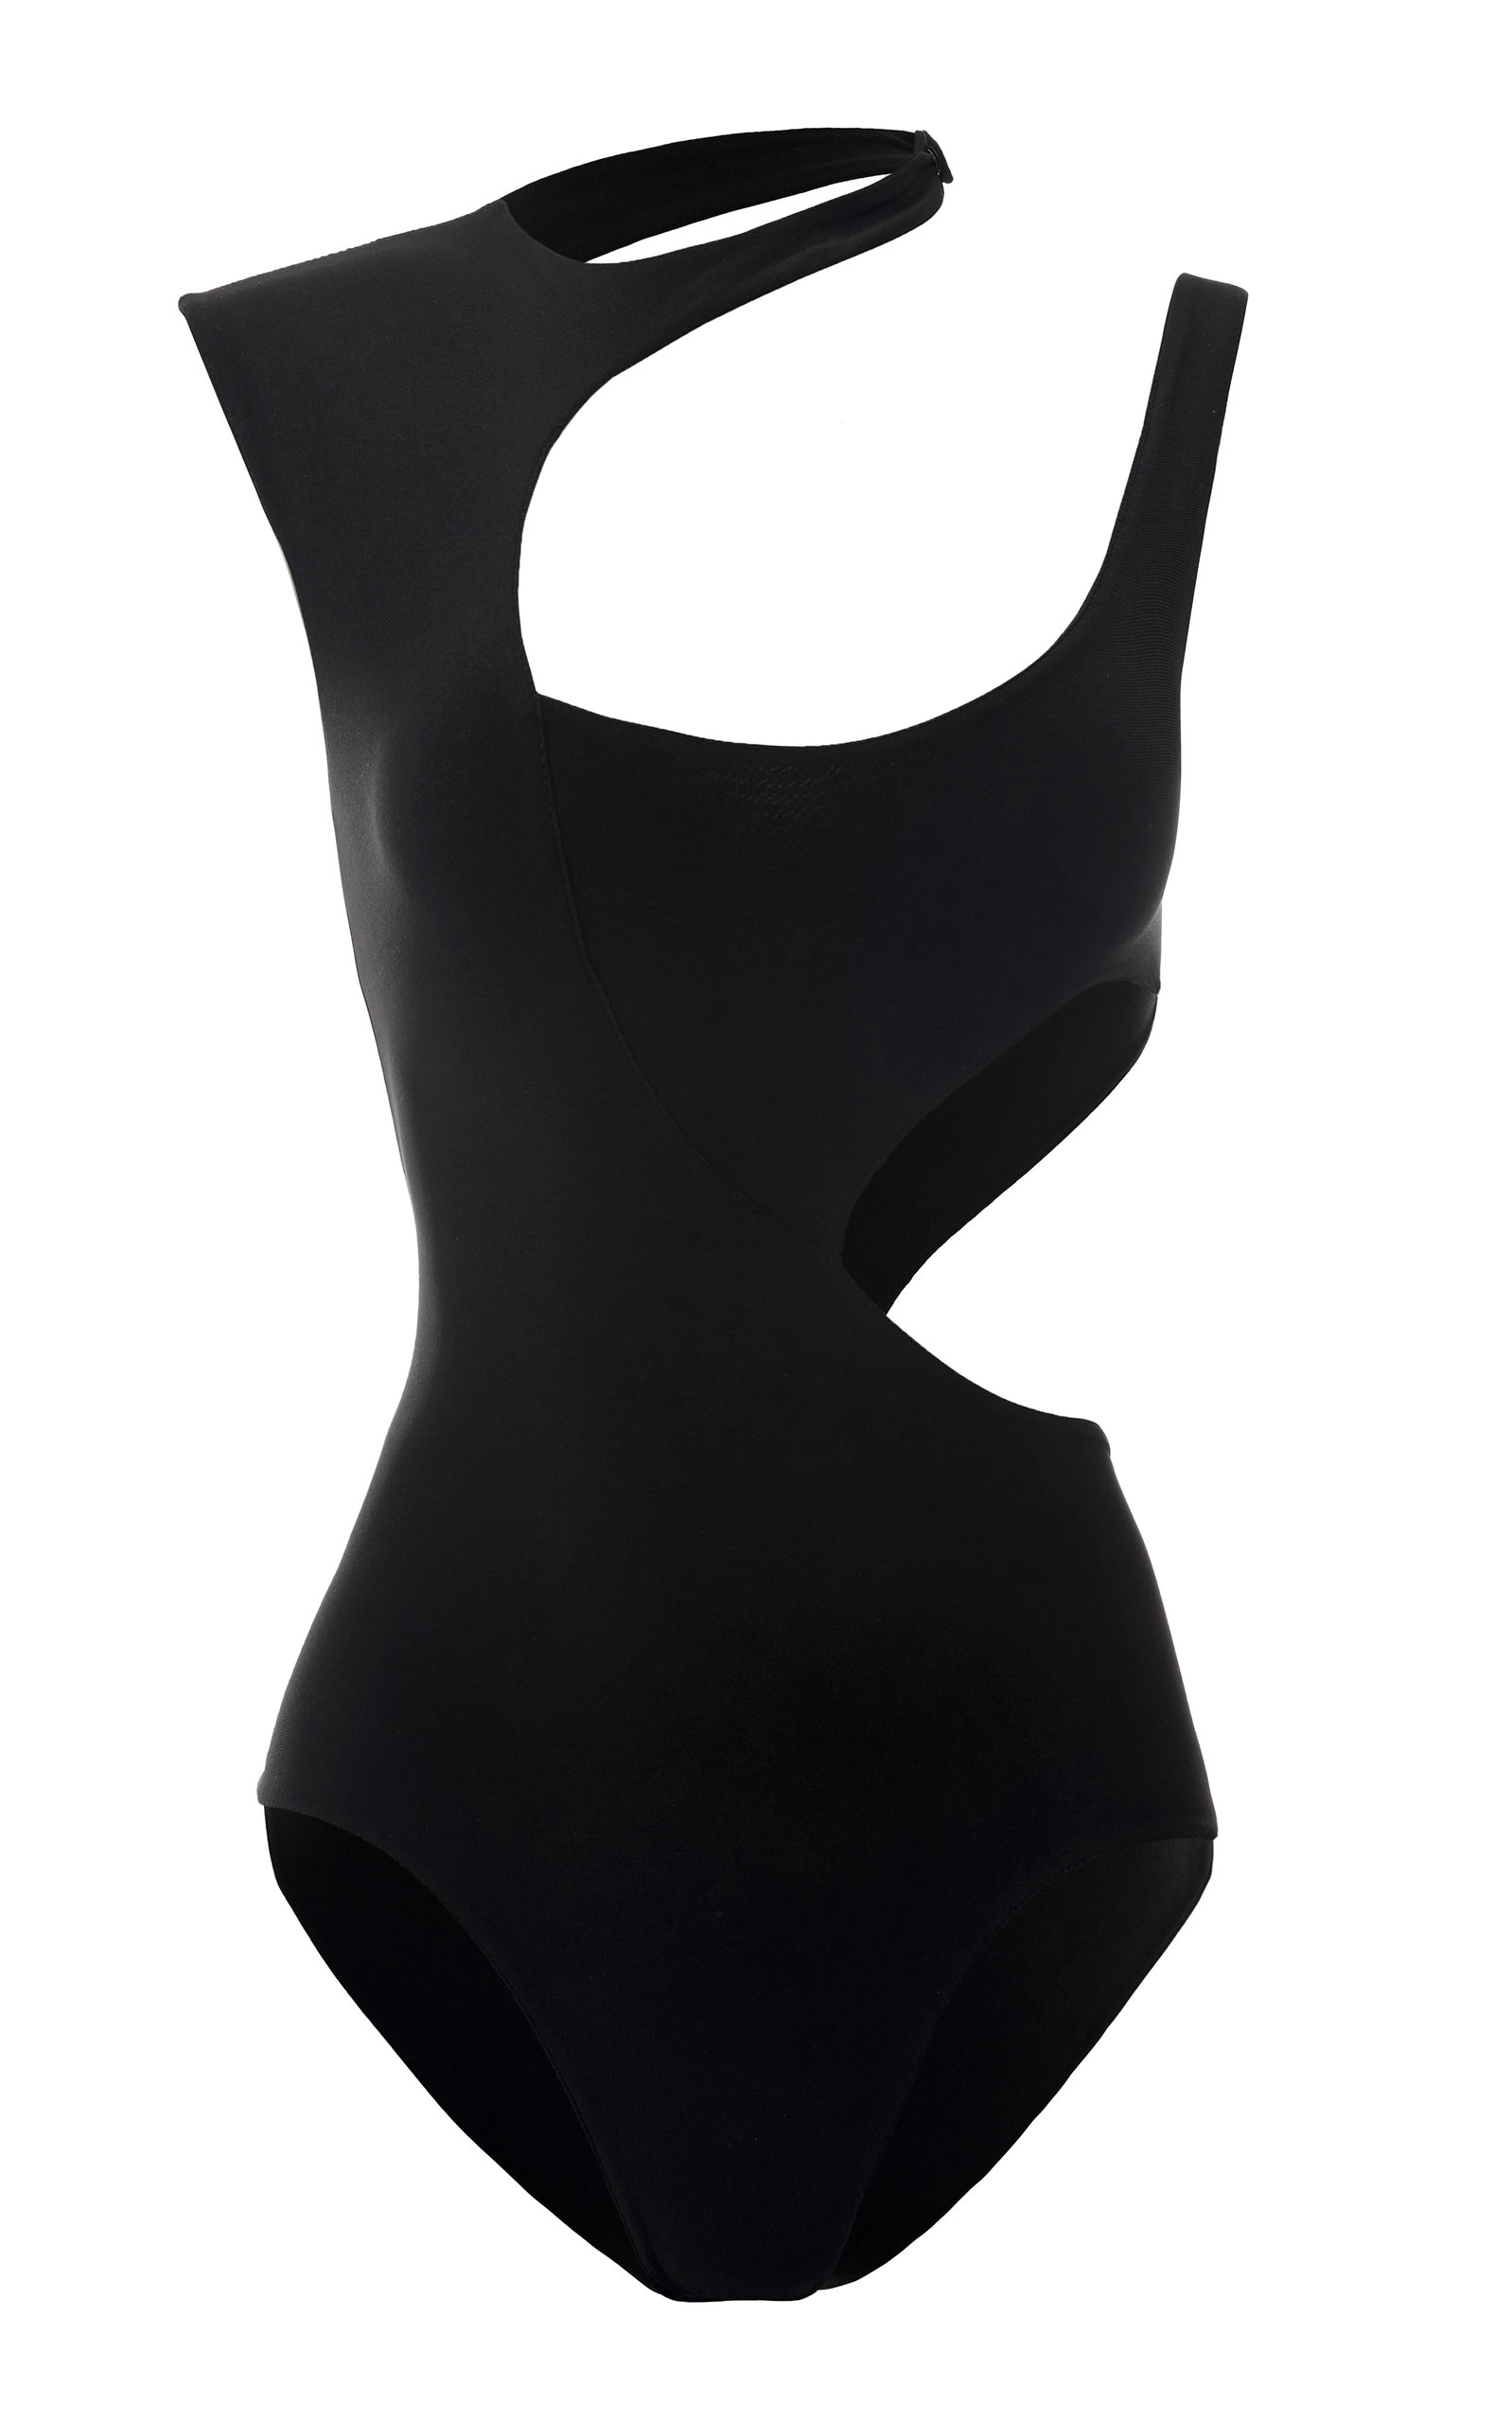 A.W.A.K.E. MODE Women's Asymmetric Cutout Bodysuit